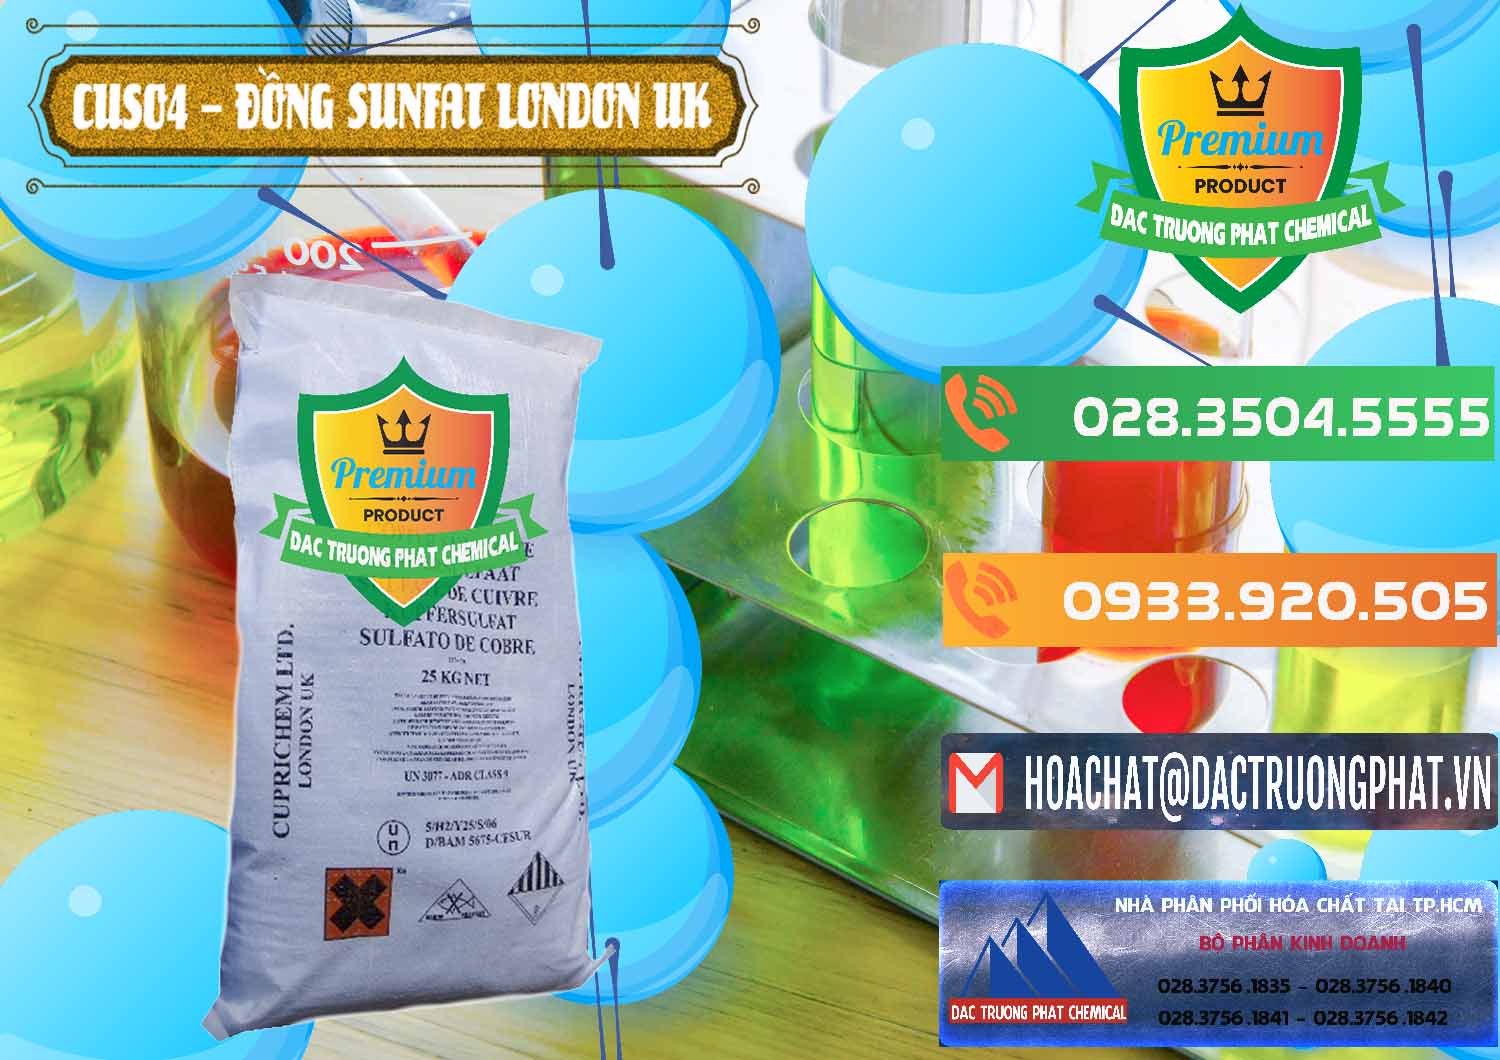 Chuyên bán - phân phối CuSO4 – Đồng Sunfat Anh Uk Kingdoms - 0478 - Nơi chuyên bán ( cung cấp ) hóa chất tại TP.HCM - hoachatxulynuoc.com.vn